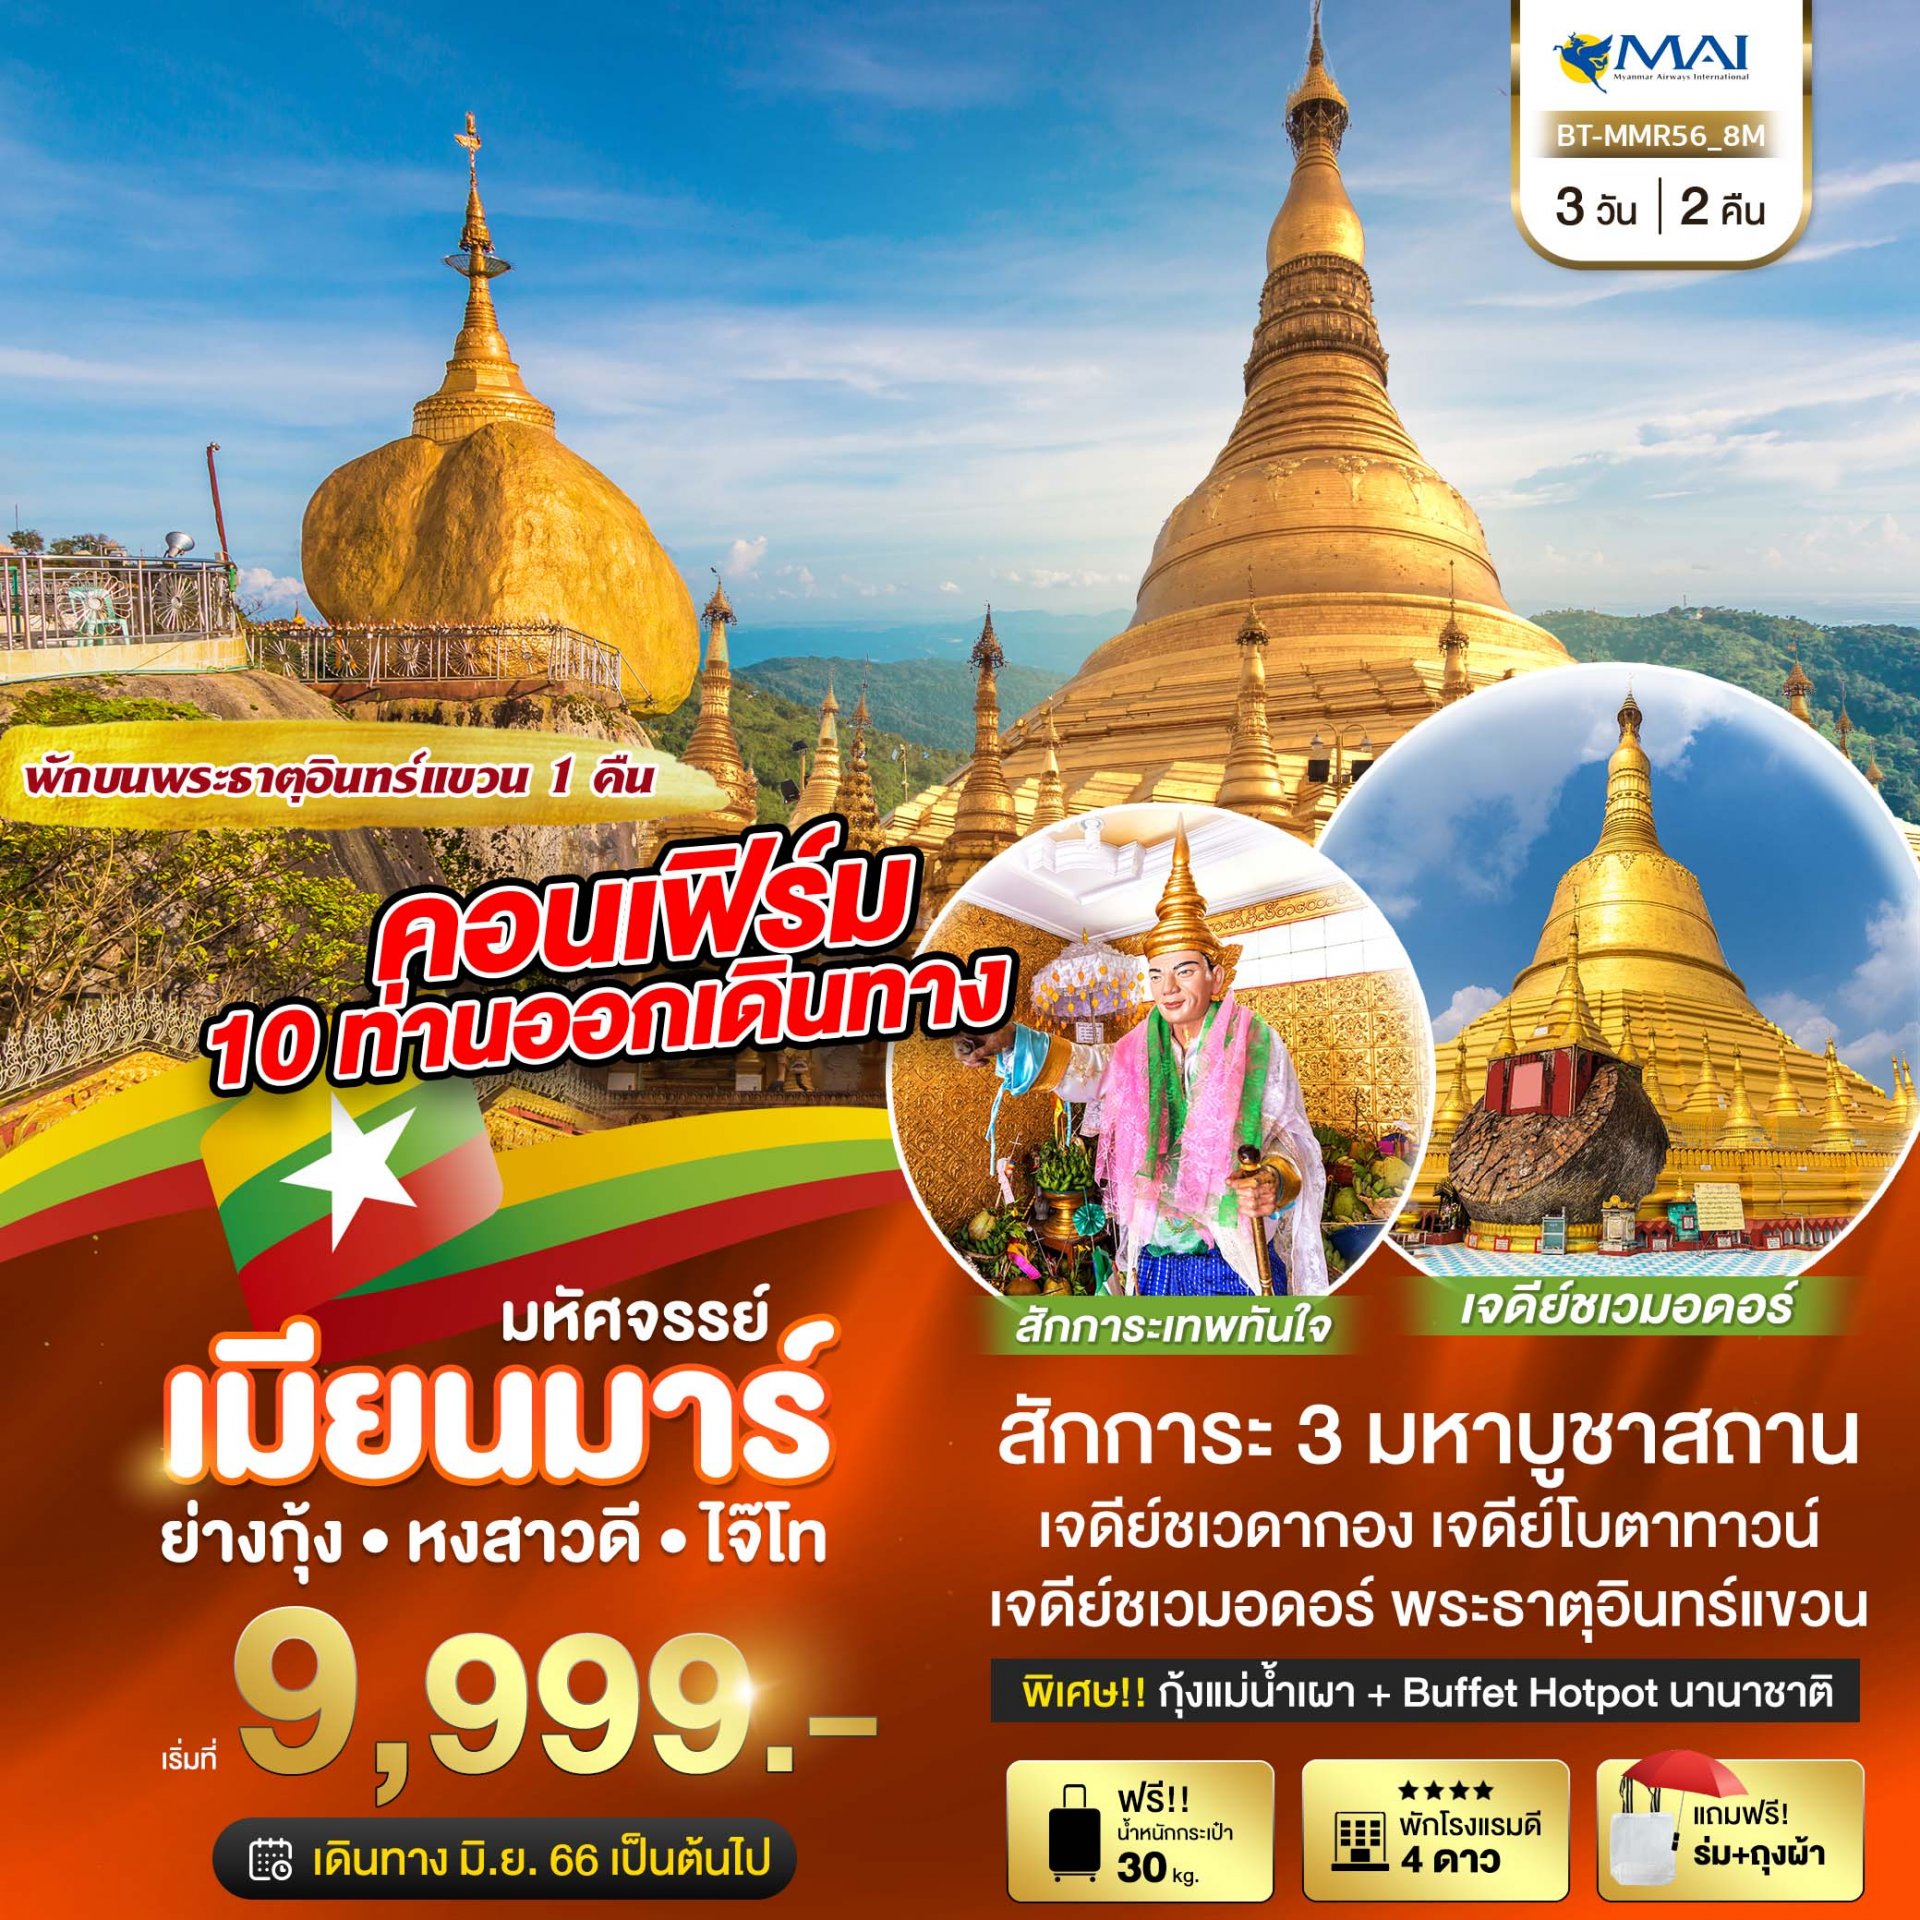 ทัวร์พม่า ย่างกุ้ง หงสาวดี 3 วัน 2 คืน - Myanmar Airways(8M)